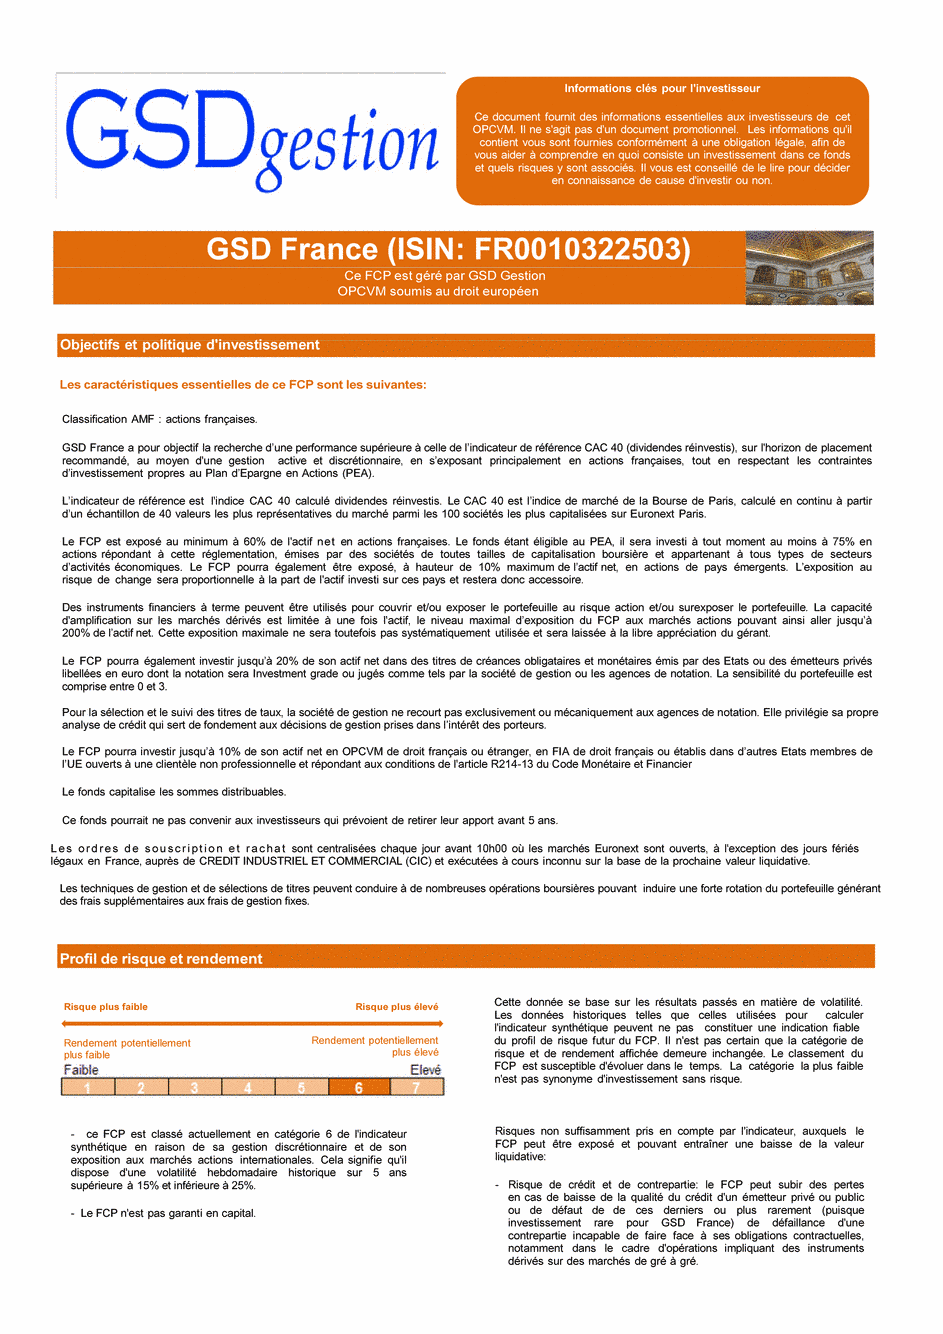 DICI-Prospectus Complet GSD France - 23/02/2018 - Français